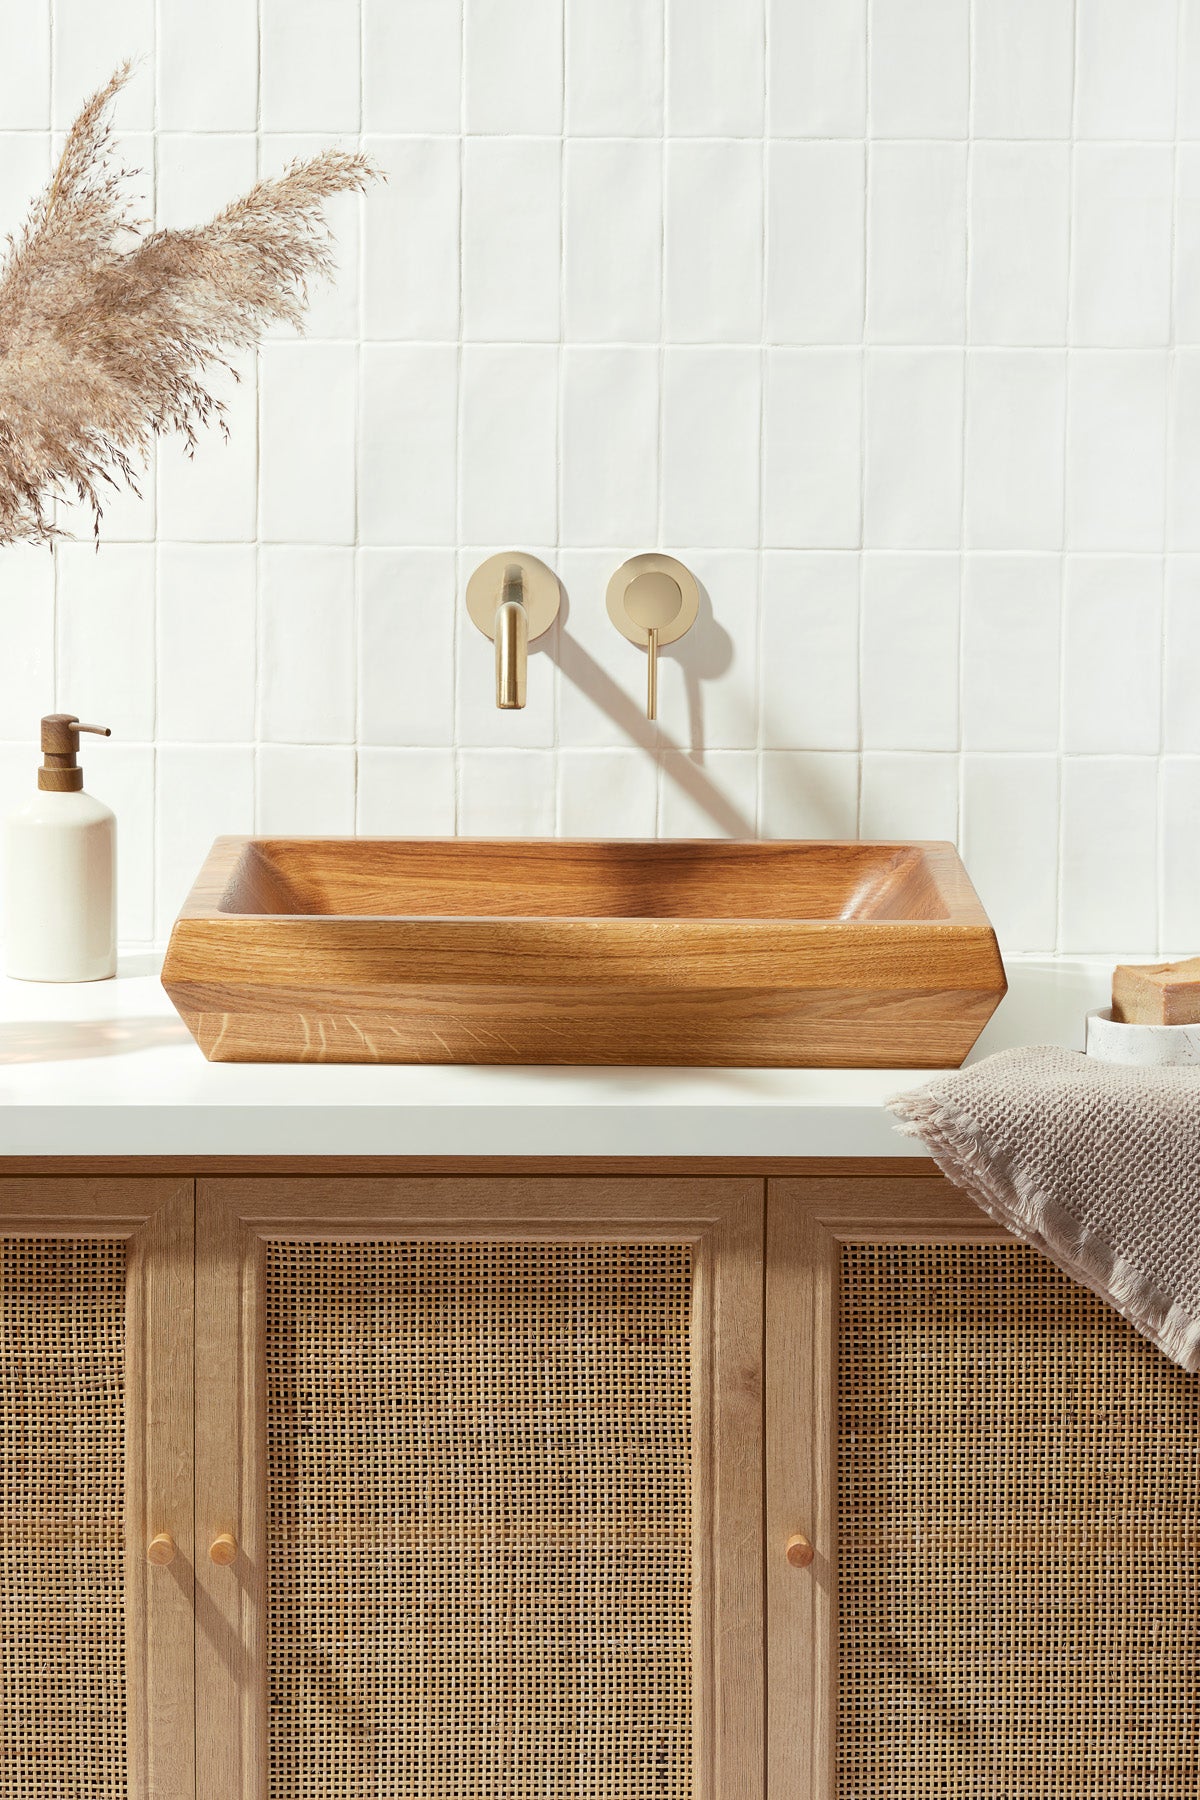 Luxuriöses Massivholz Waschbecken - Edle Holzsorten und feinste Handarbeit für anspruchsvolle Badezimmer.